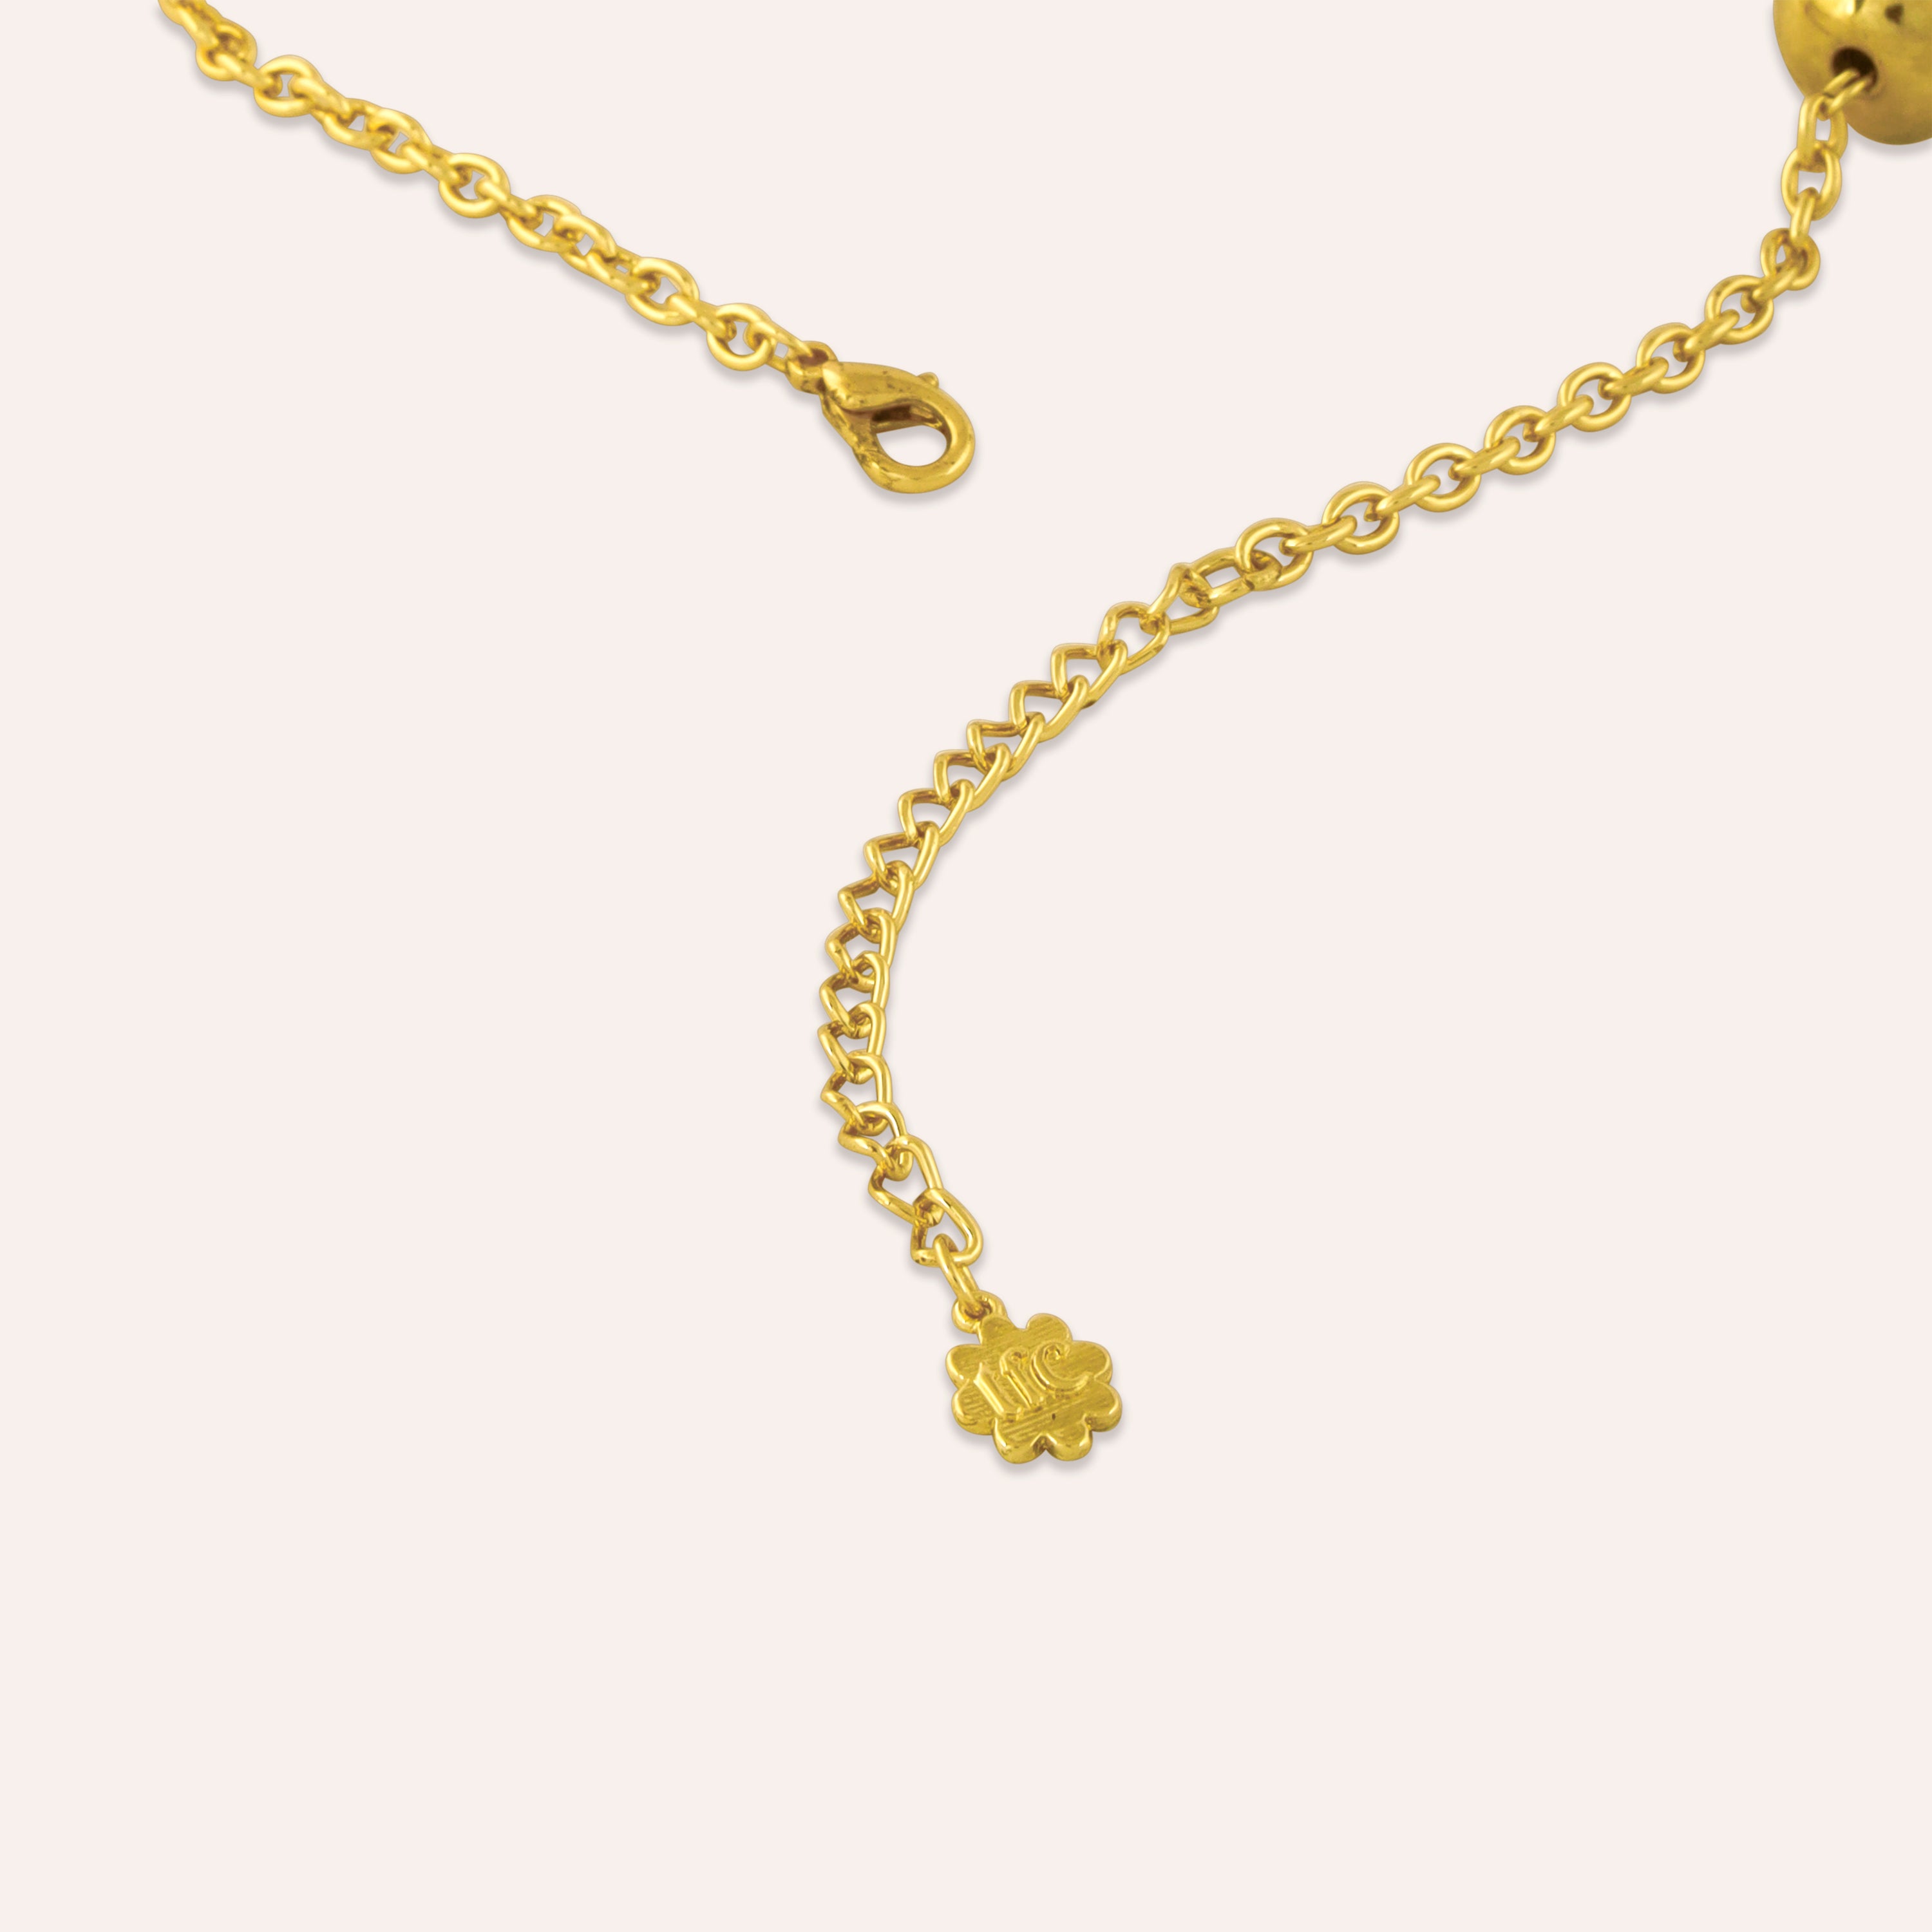 Vintage 14K Gold Faceted Tank Bracelet, 7” Long - Ruby Lane